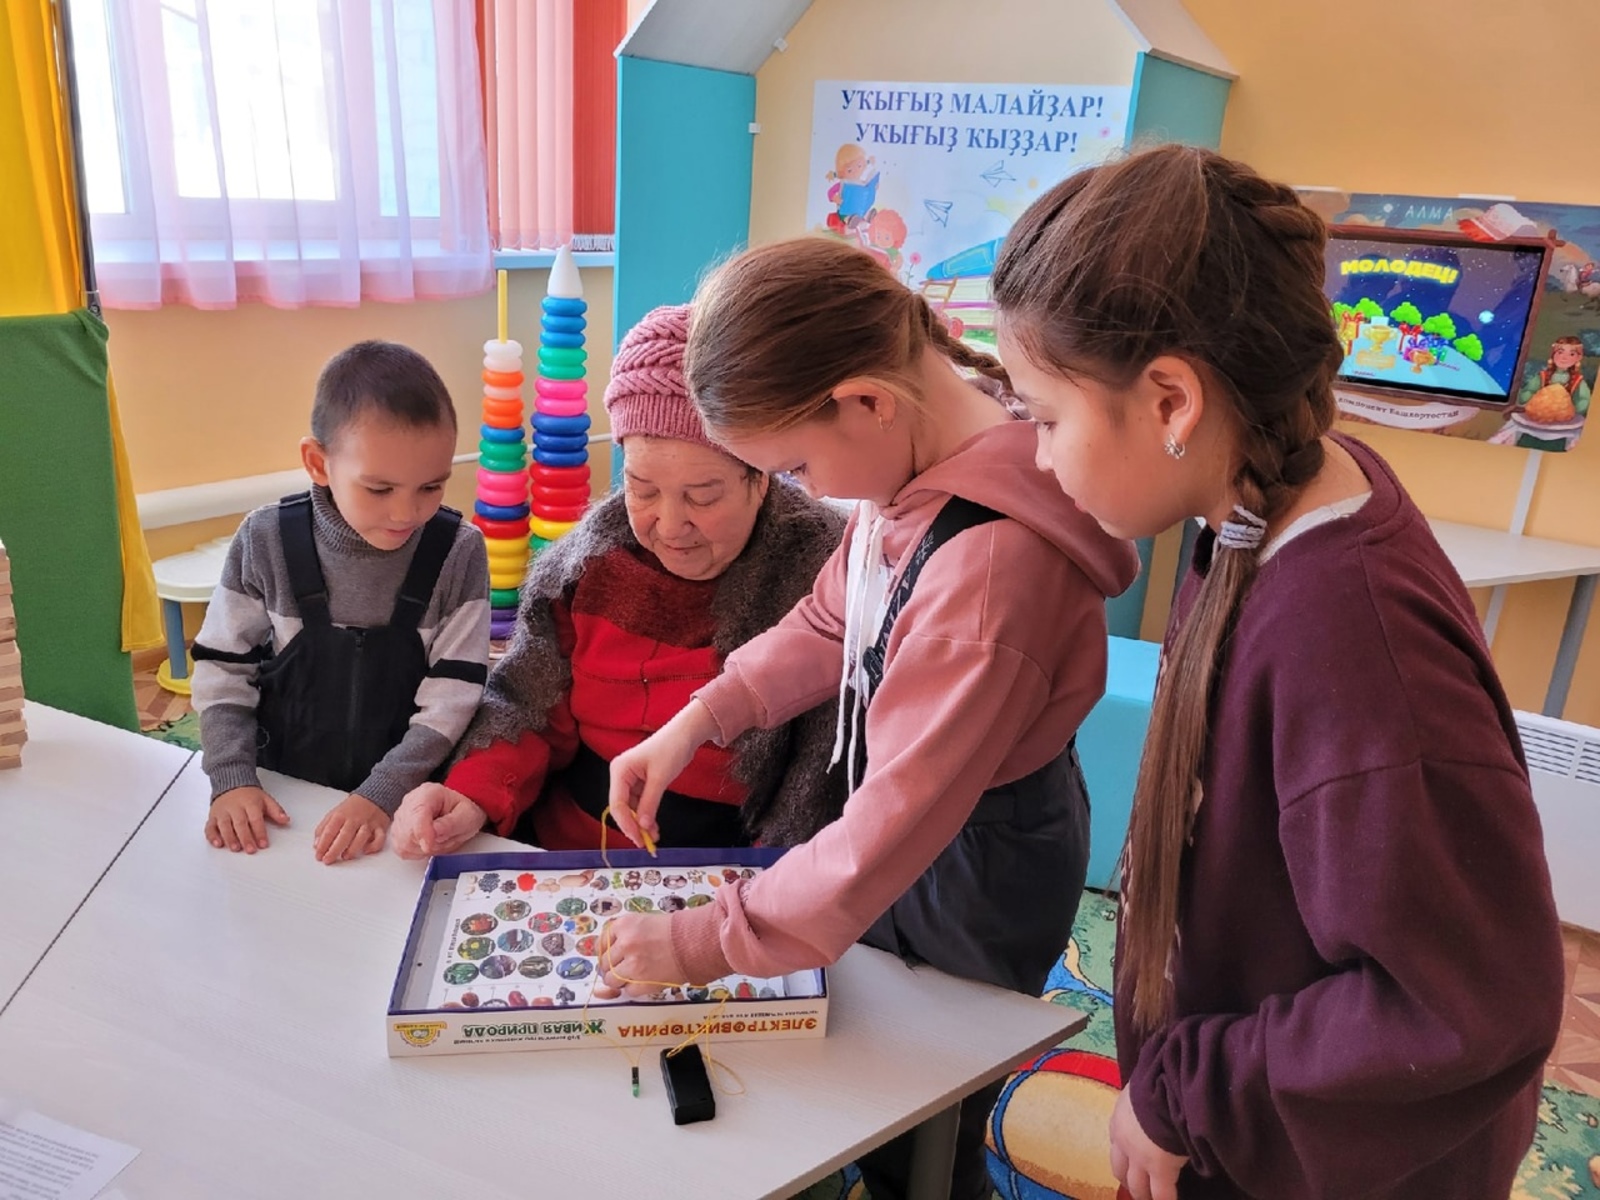 Иткуловскую библиотеку любят посещать родители с детьми и бабушки со своими внуками